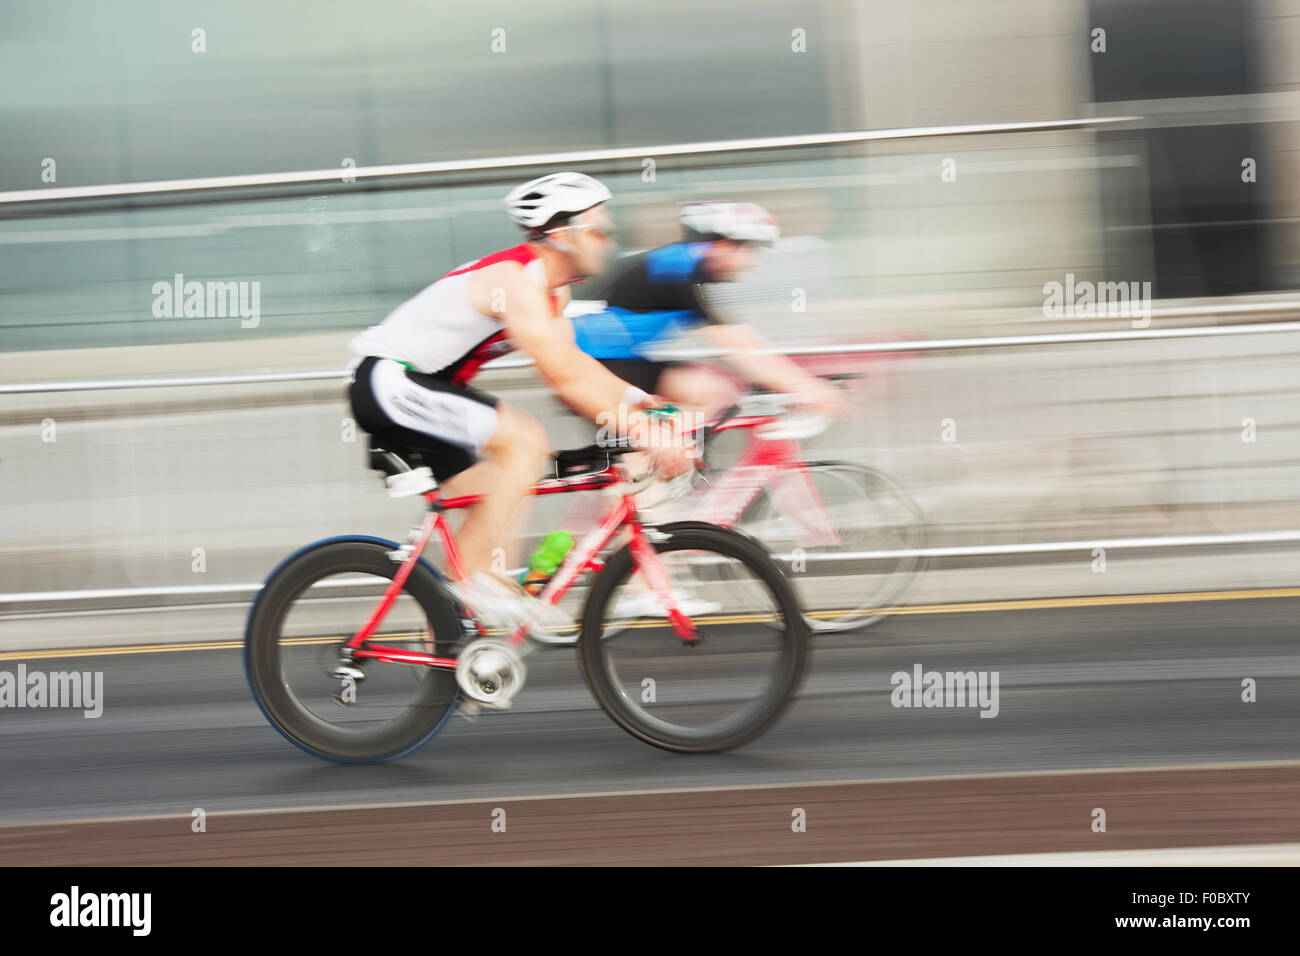 Des vélos sur les athlètes en compétition dans la course, blurred motion Banque D'Images